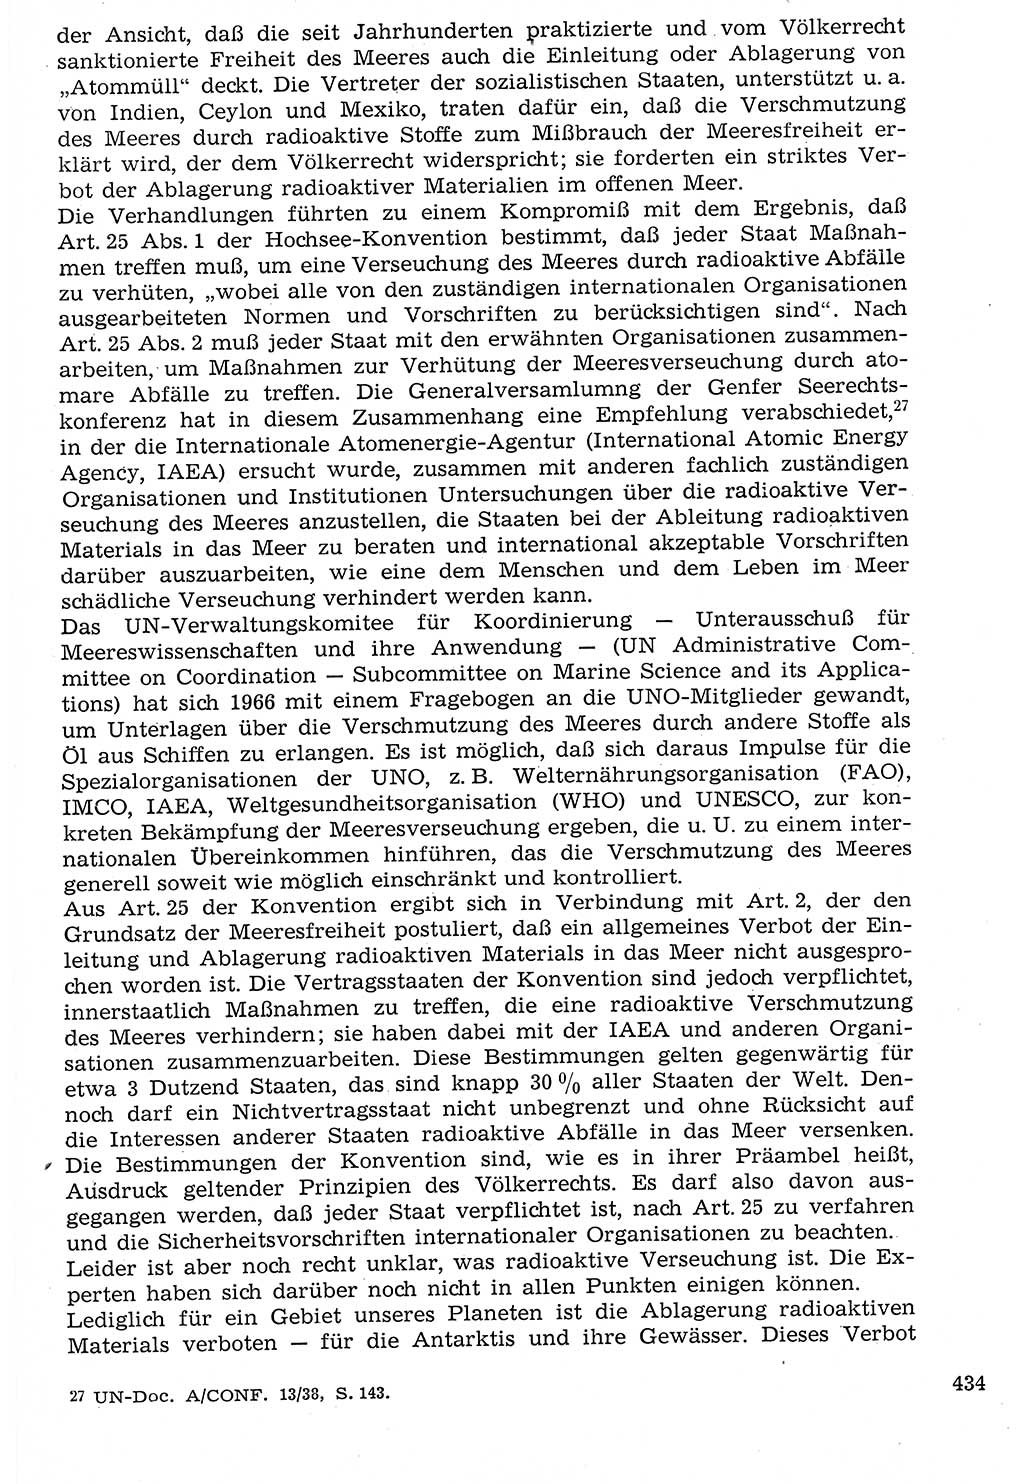 Staat und Recht (StuR), 17. Jahrgang [Deutsche Demokratische Republik (DDR)] 1968, Seite 434 (StuR DDR 1968, S. 434)